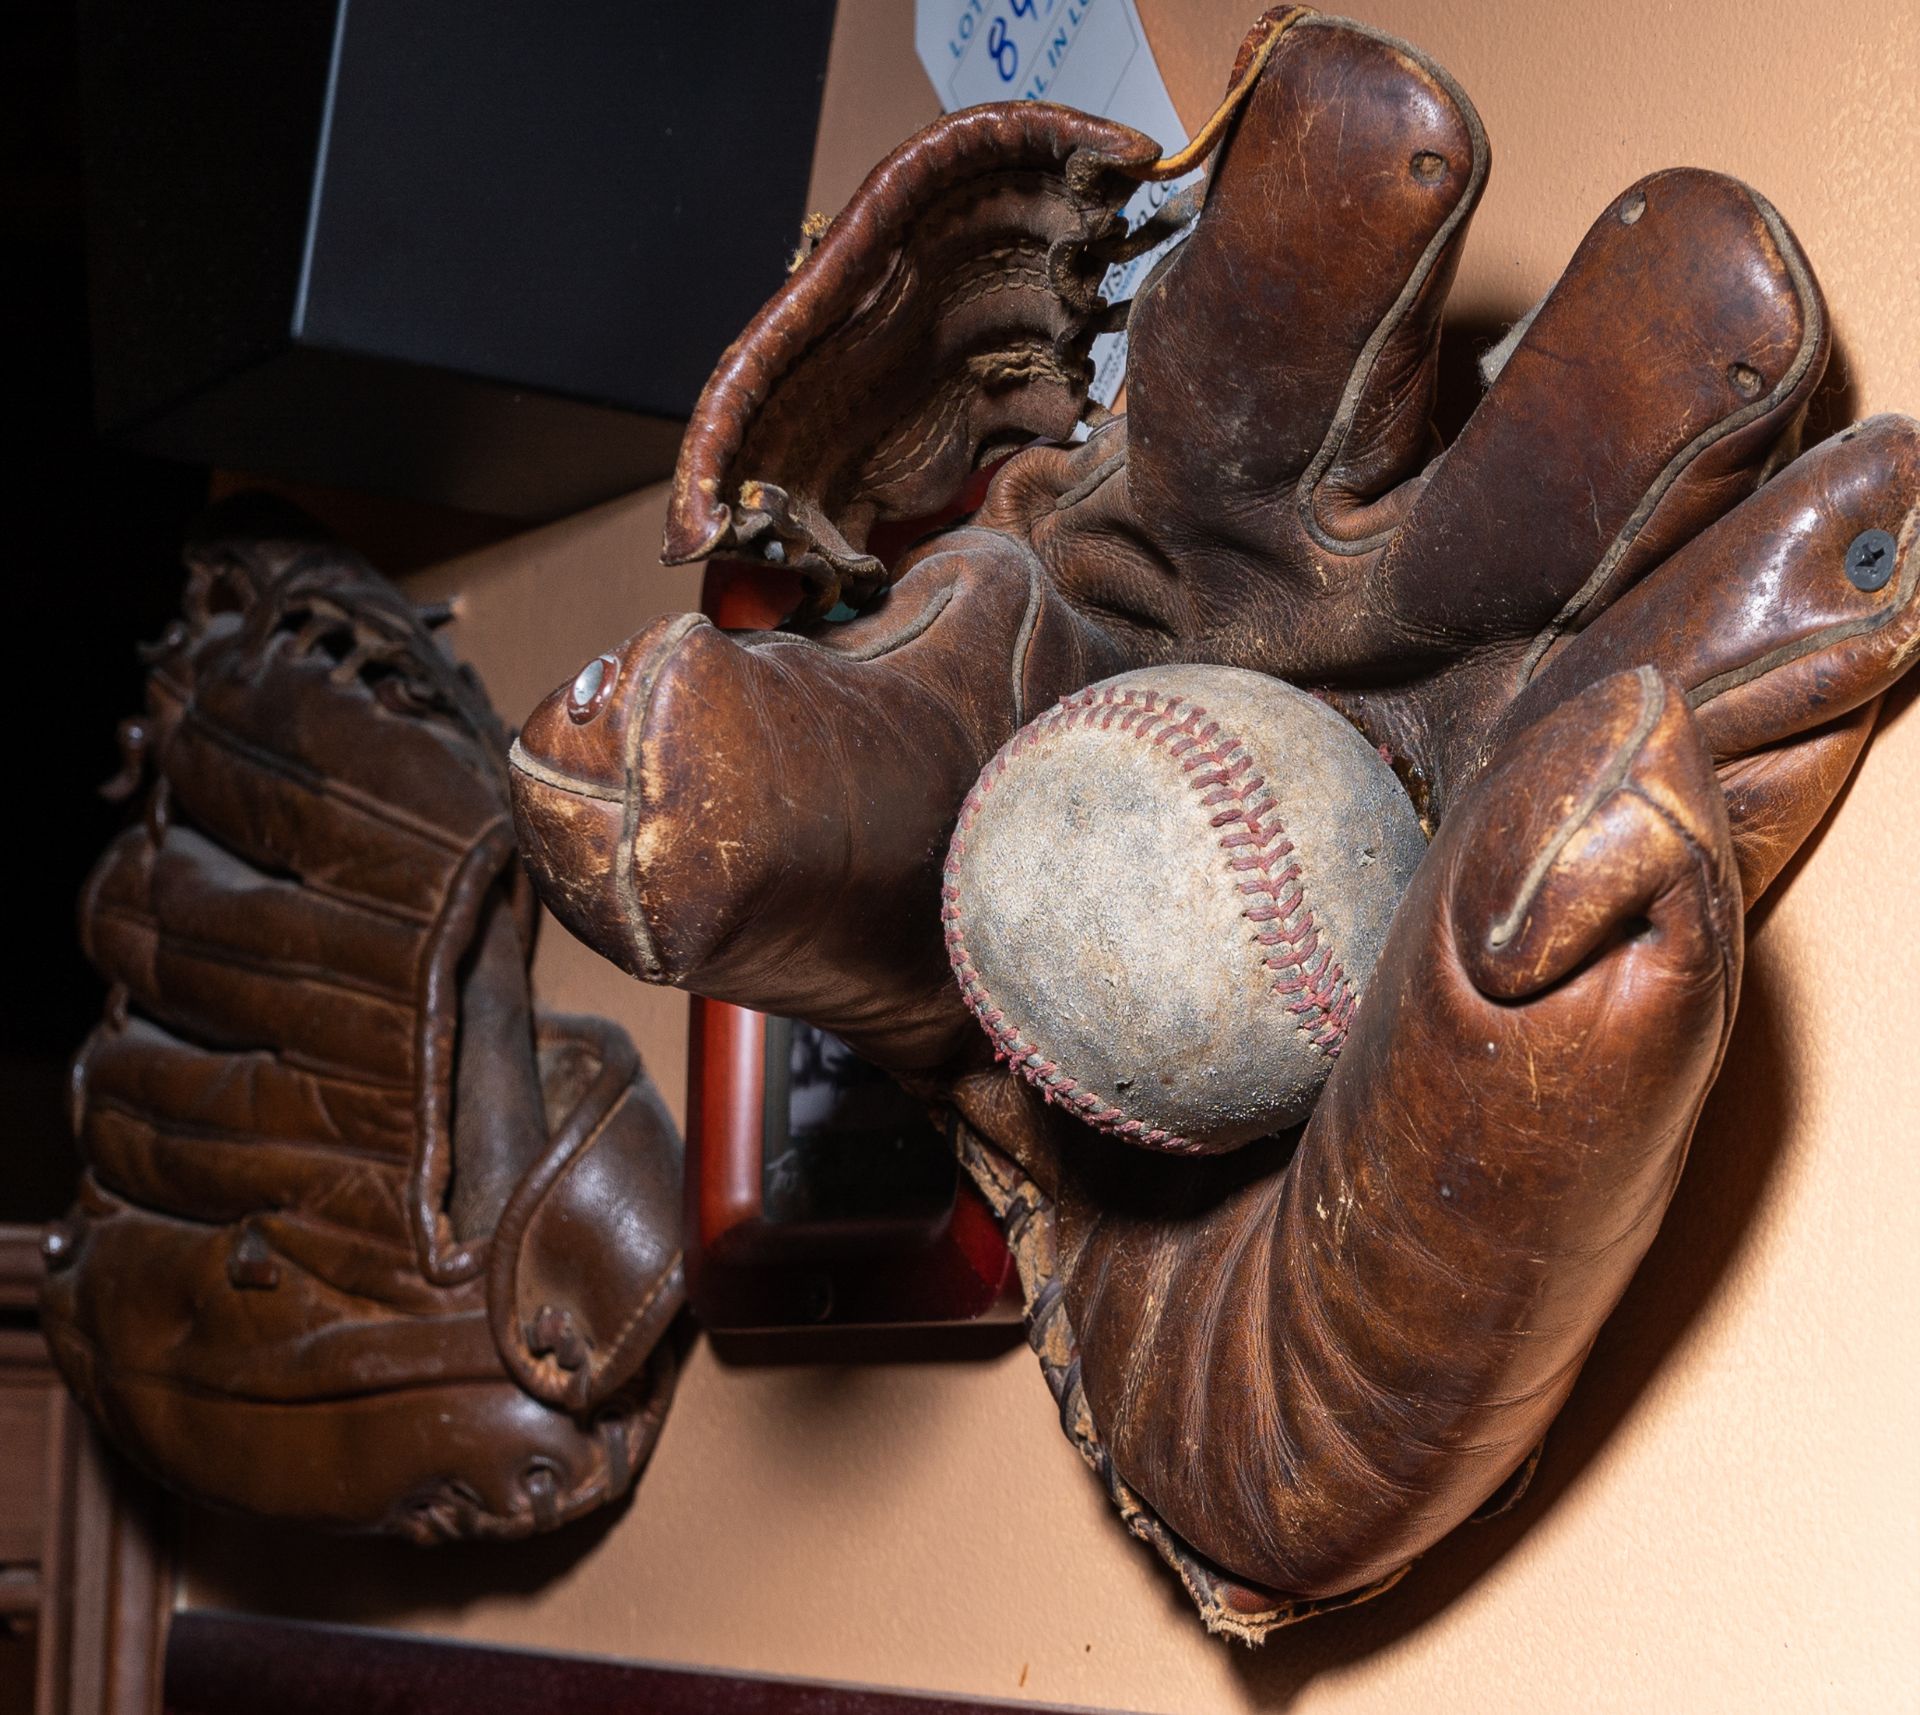 [Lot] Asst. Sports Décor C/o: Balls, Gloves, Etc.